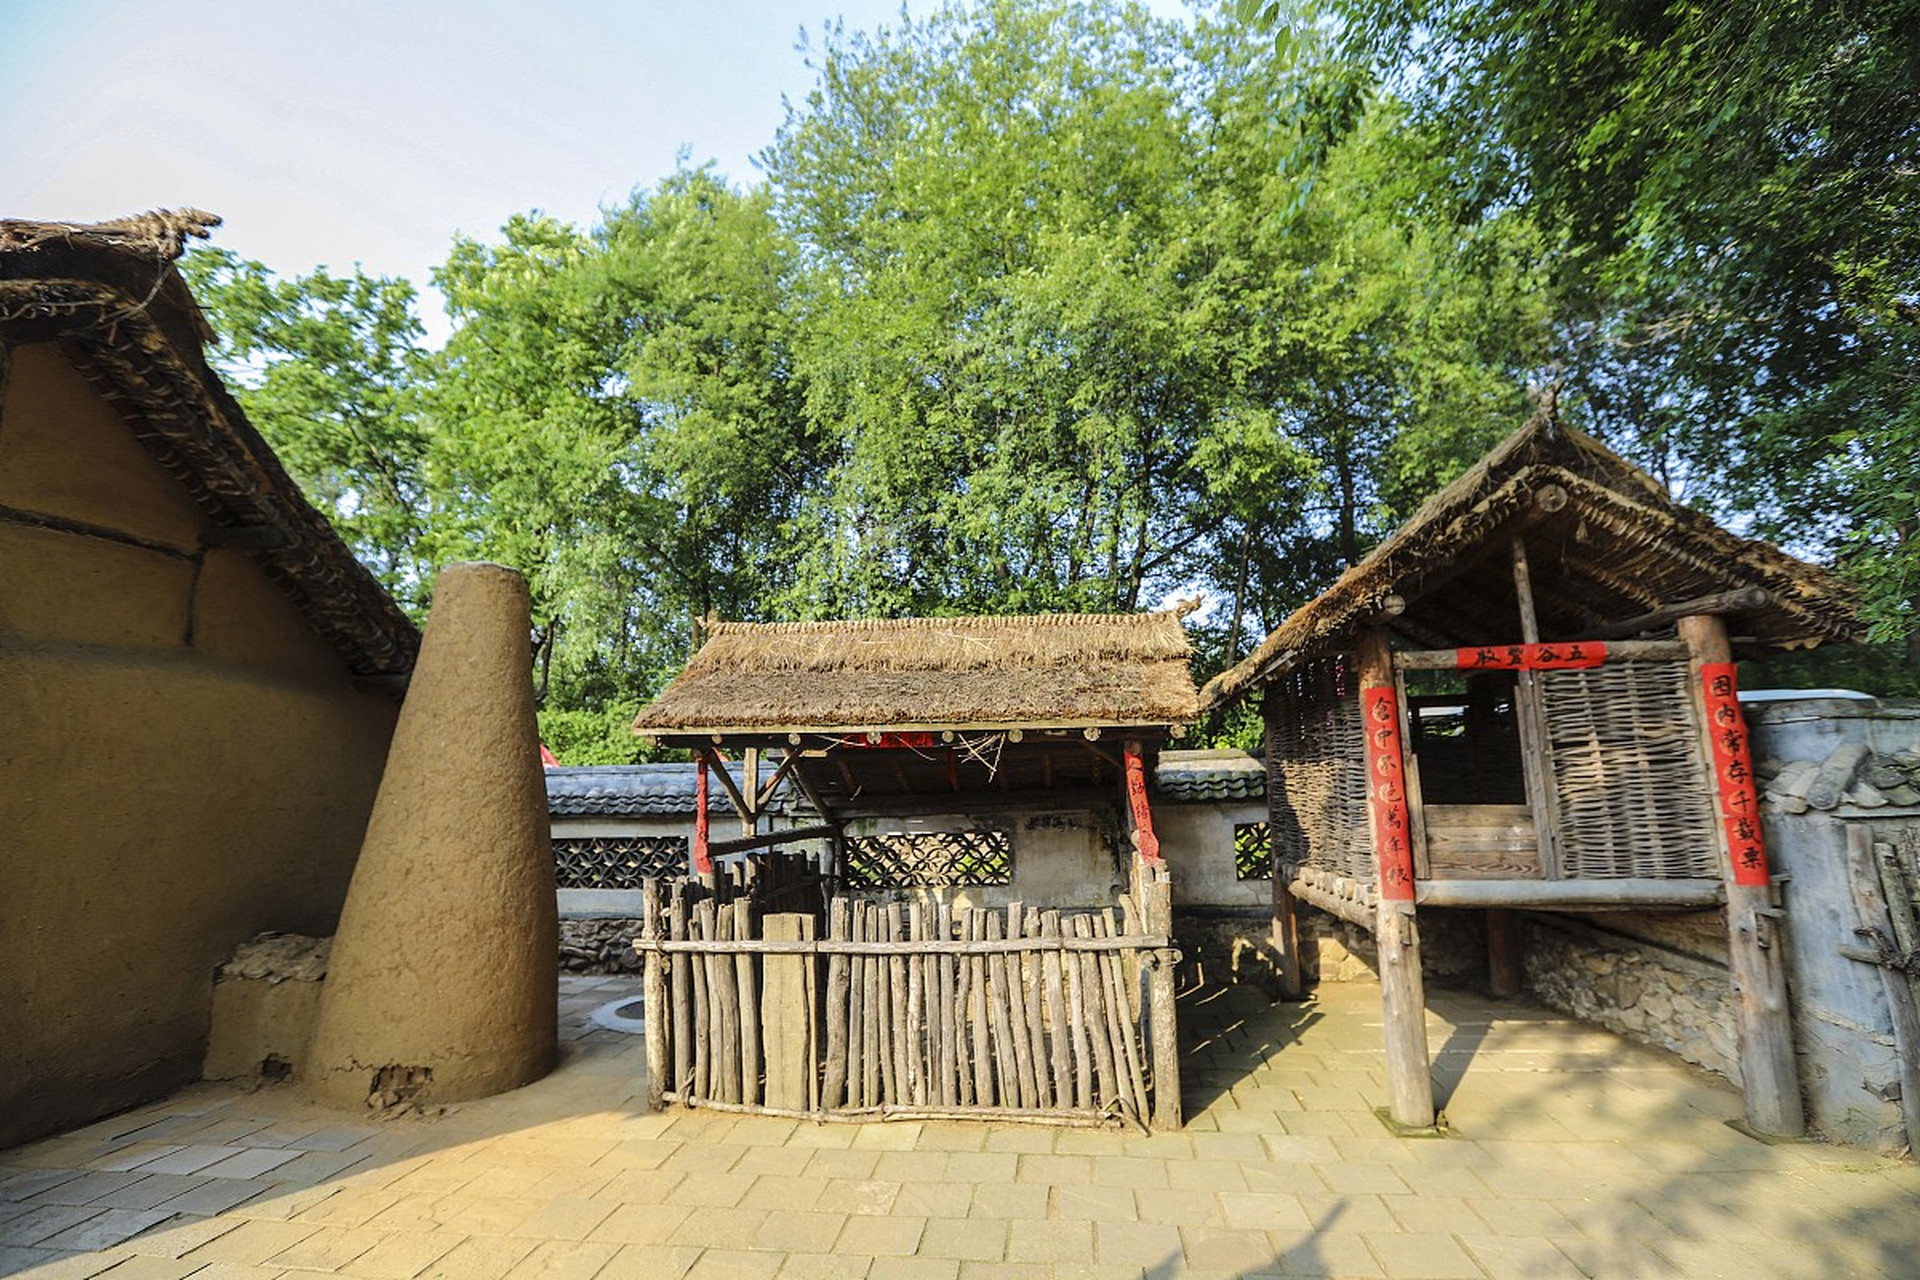 沈阳满族民俗村是一个融合了满族传统文化,田园风光和文化特色的旅游